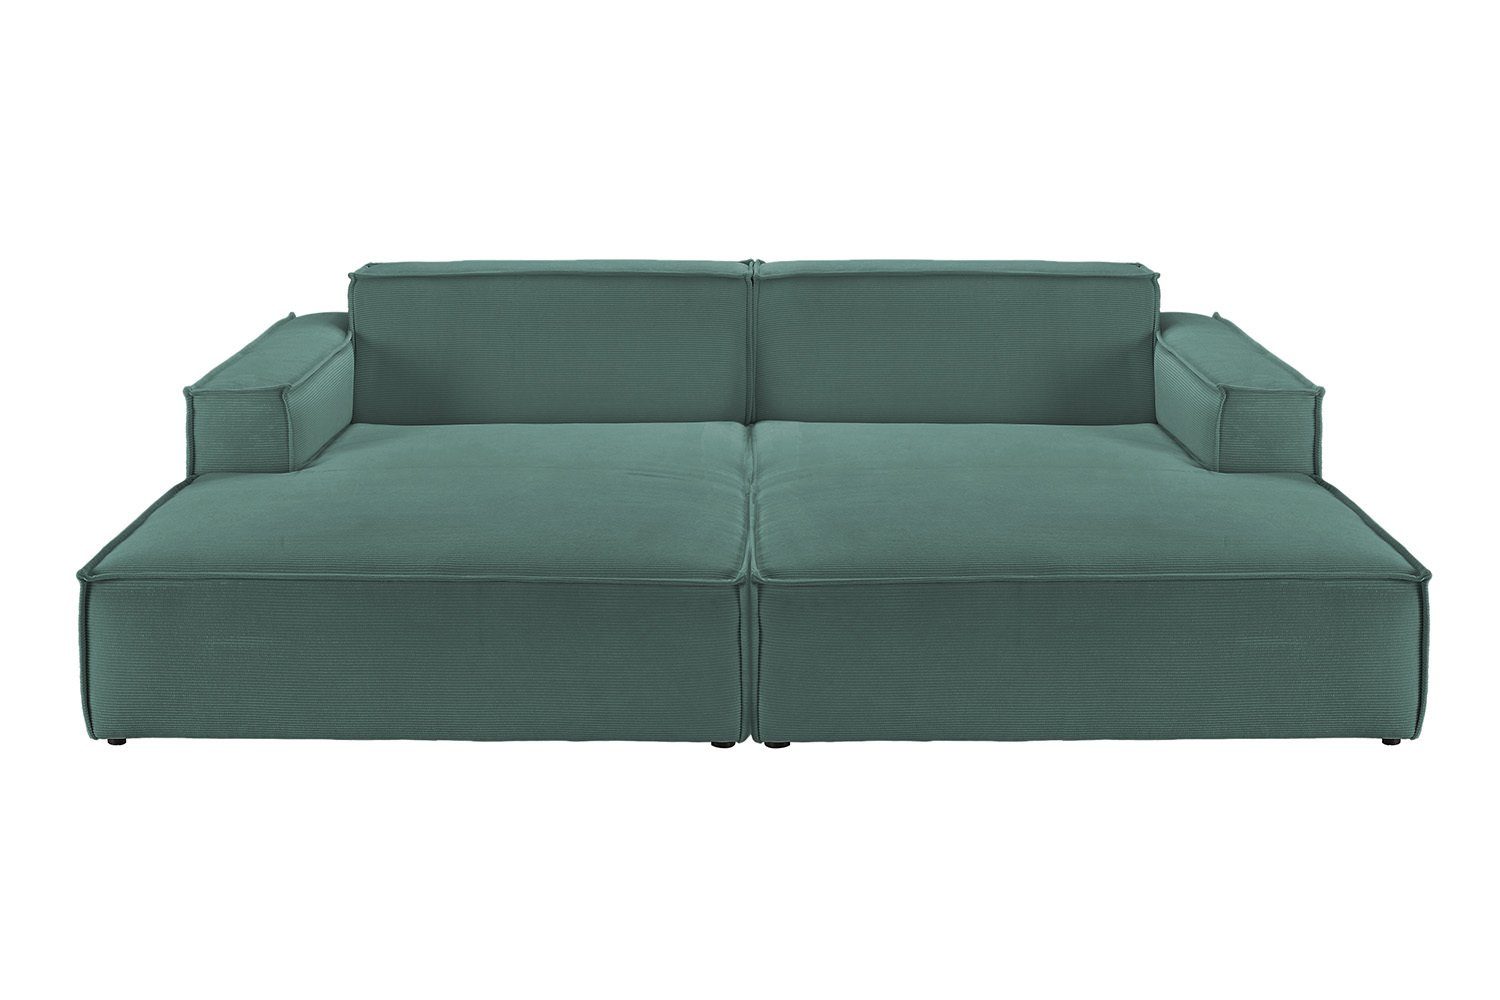 SAMU, KAWOLA verschiedene Sofa grün Feincord Big-Sofa Farben